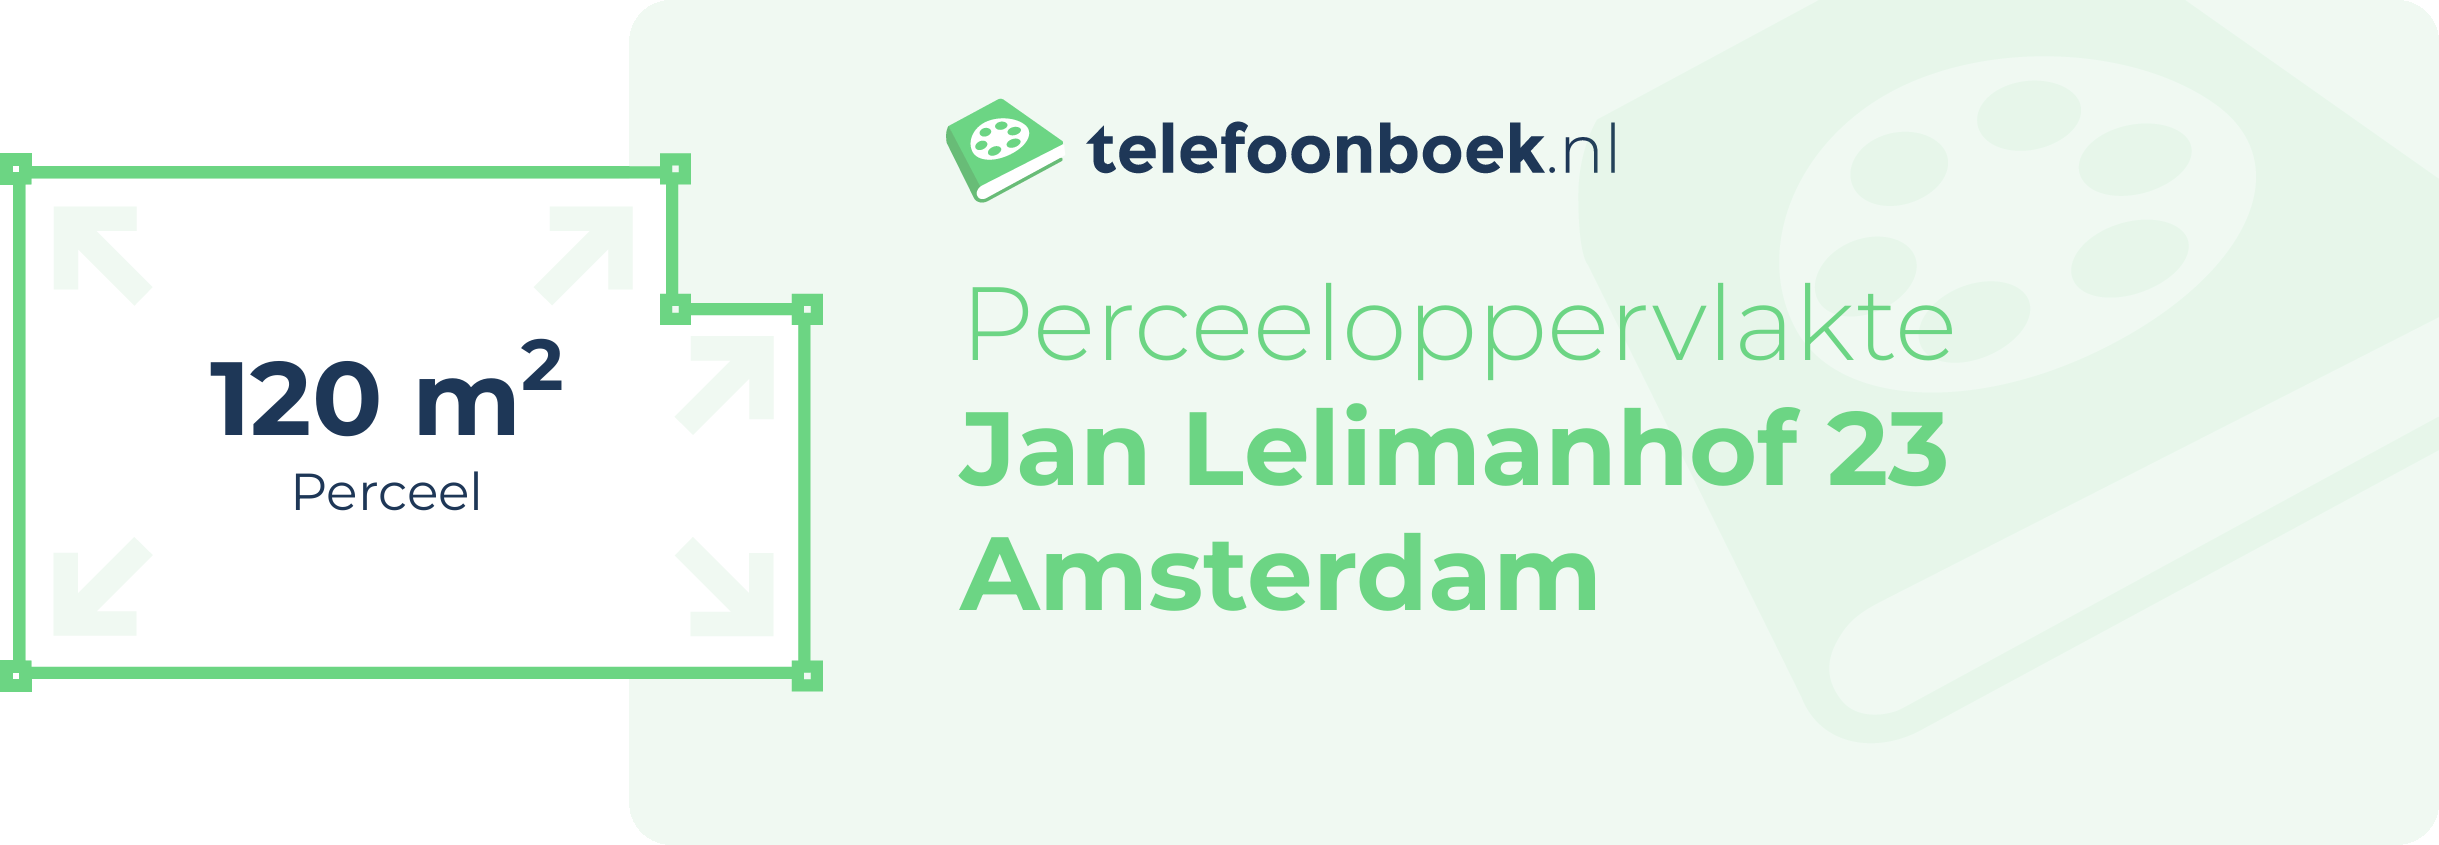 Perceeloppervlakte Jan Lelimanhof 23 Amsterdam